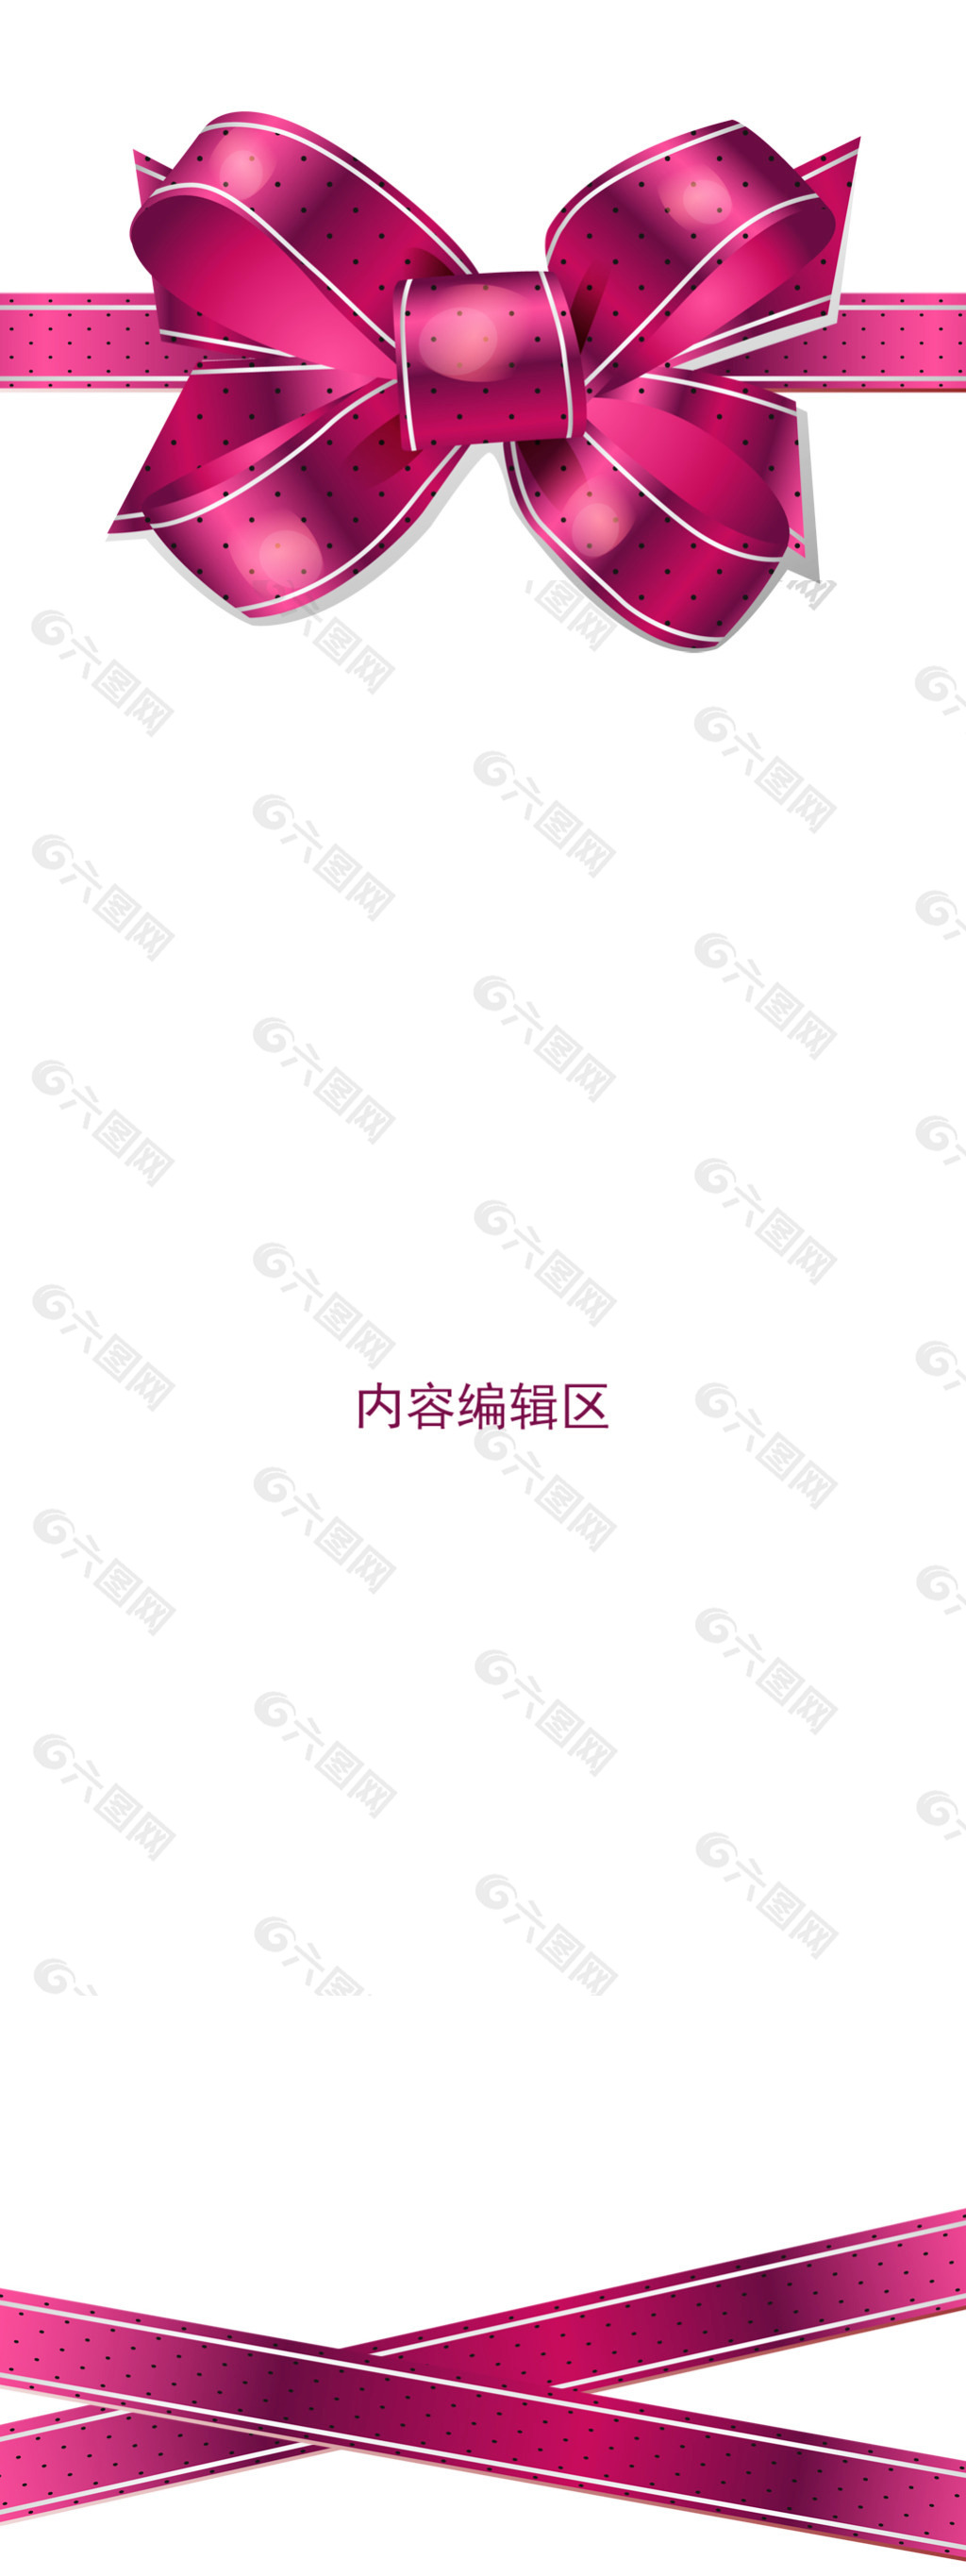 紫色中国结展架模板设计素材海报画面